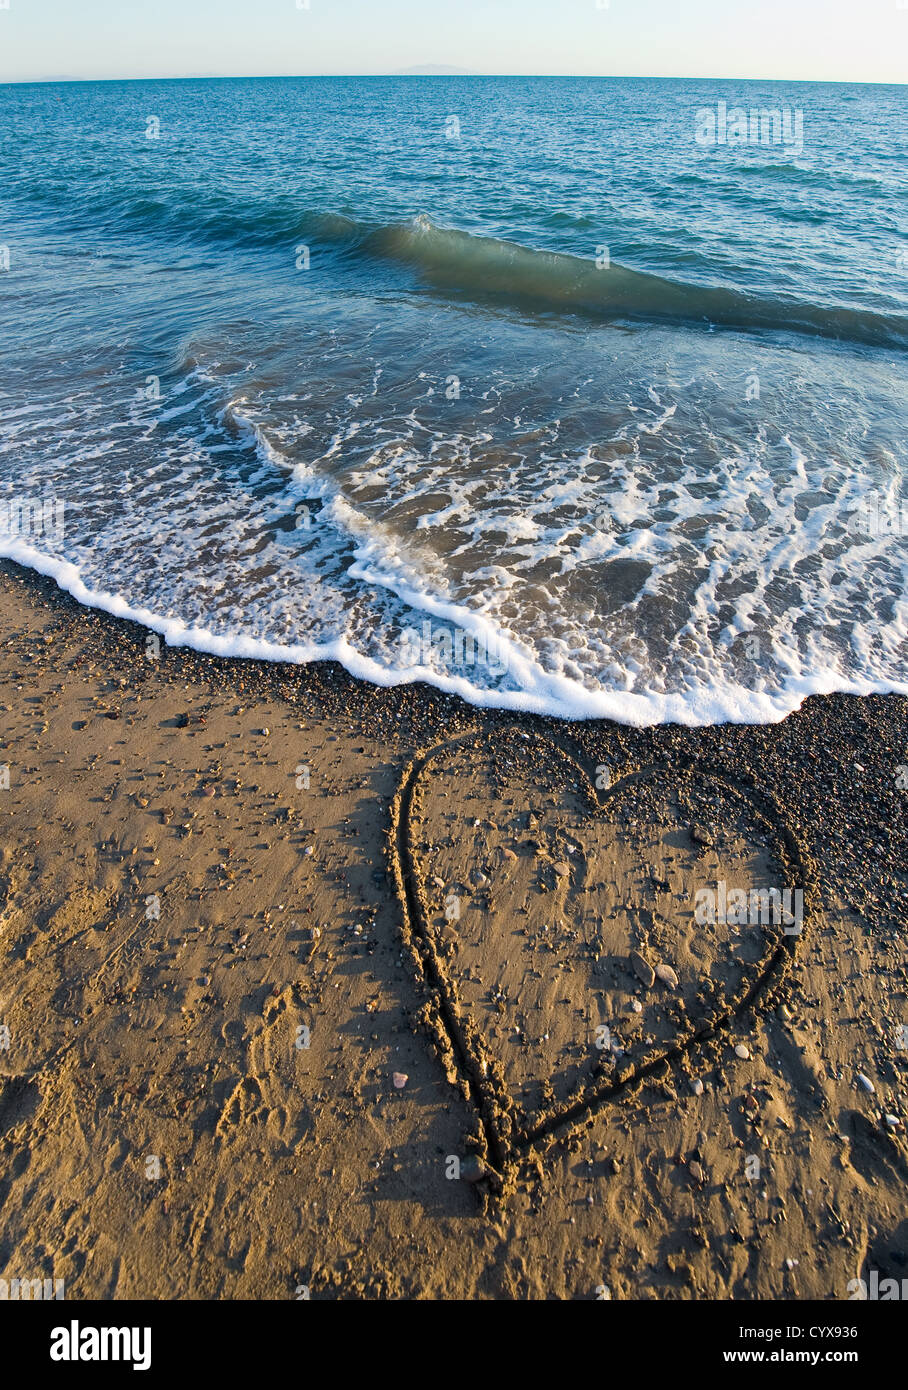 Un coeur dessiné dans le sable d'une plage Banque D'Images